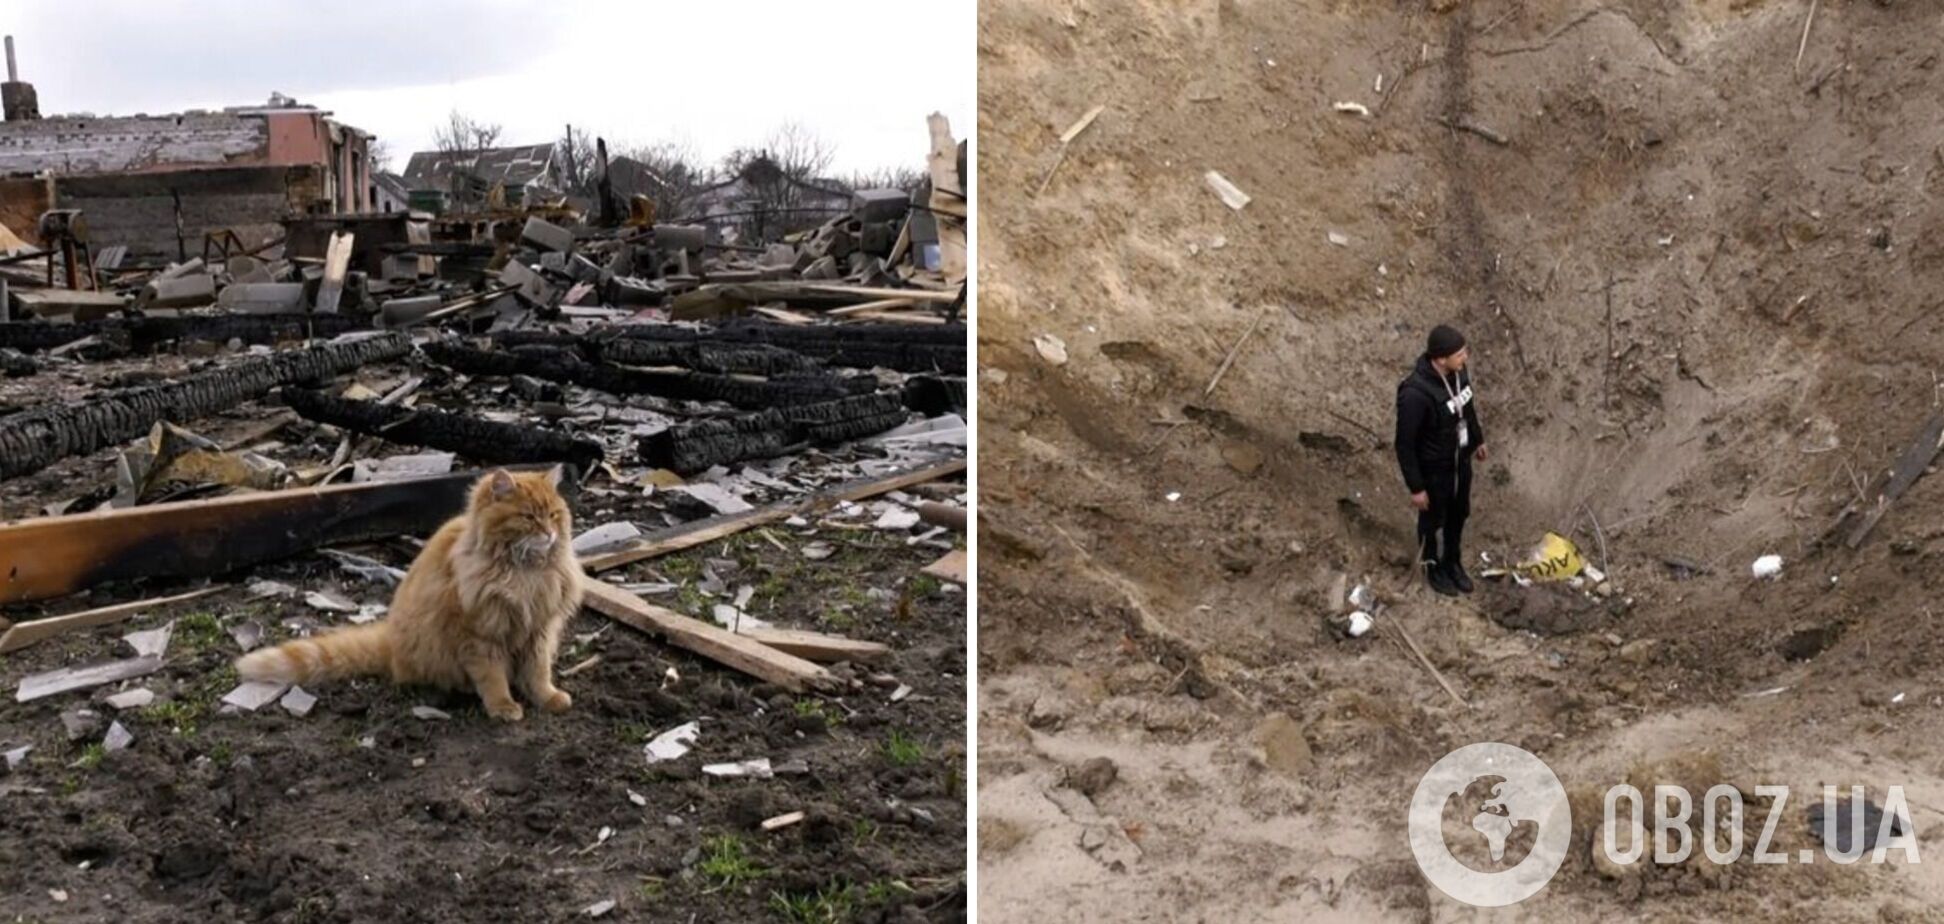 Воронки в человеческий рост и ни одного уцелевшего дома: появились фото из освобожденной ВСУ Новоселовки под Черниговом